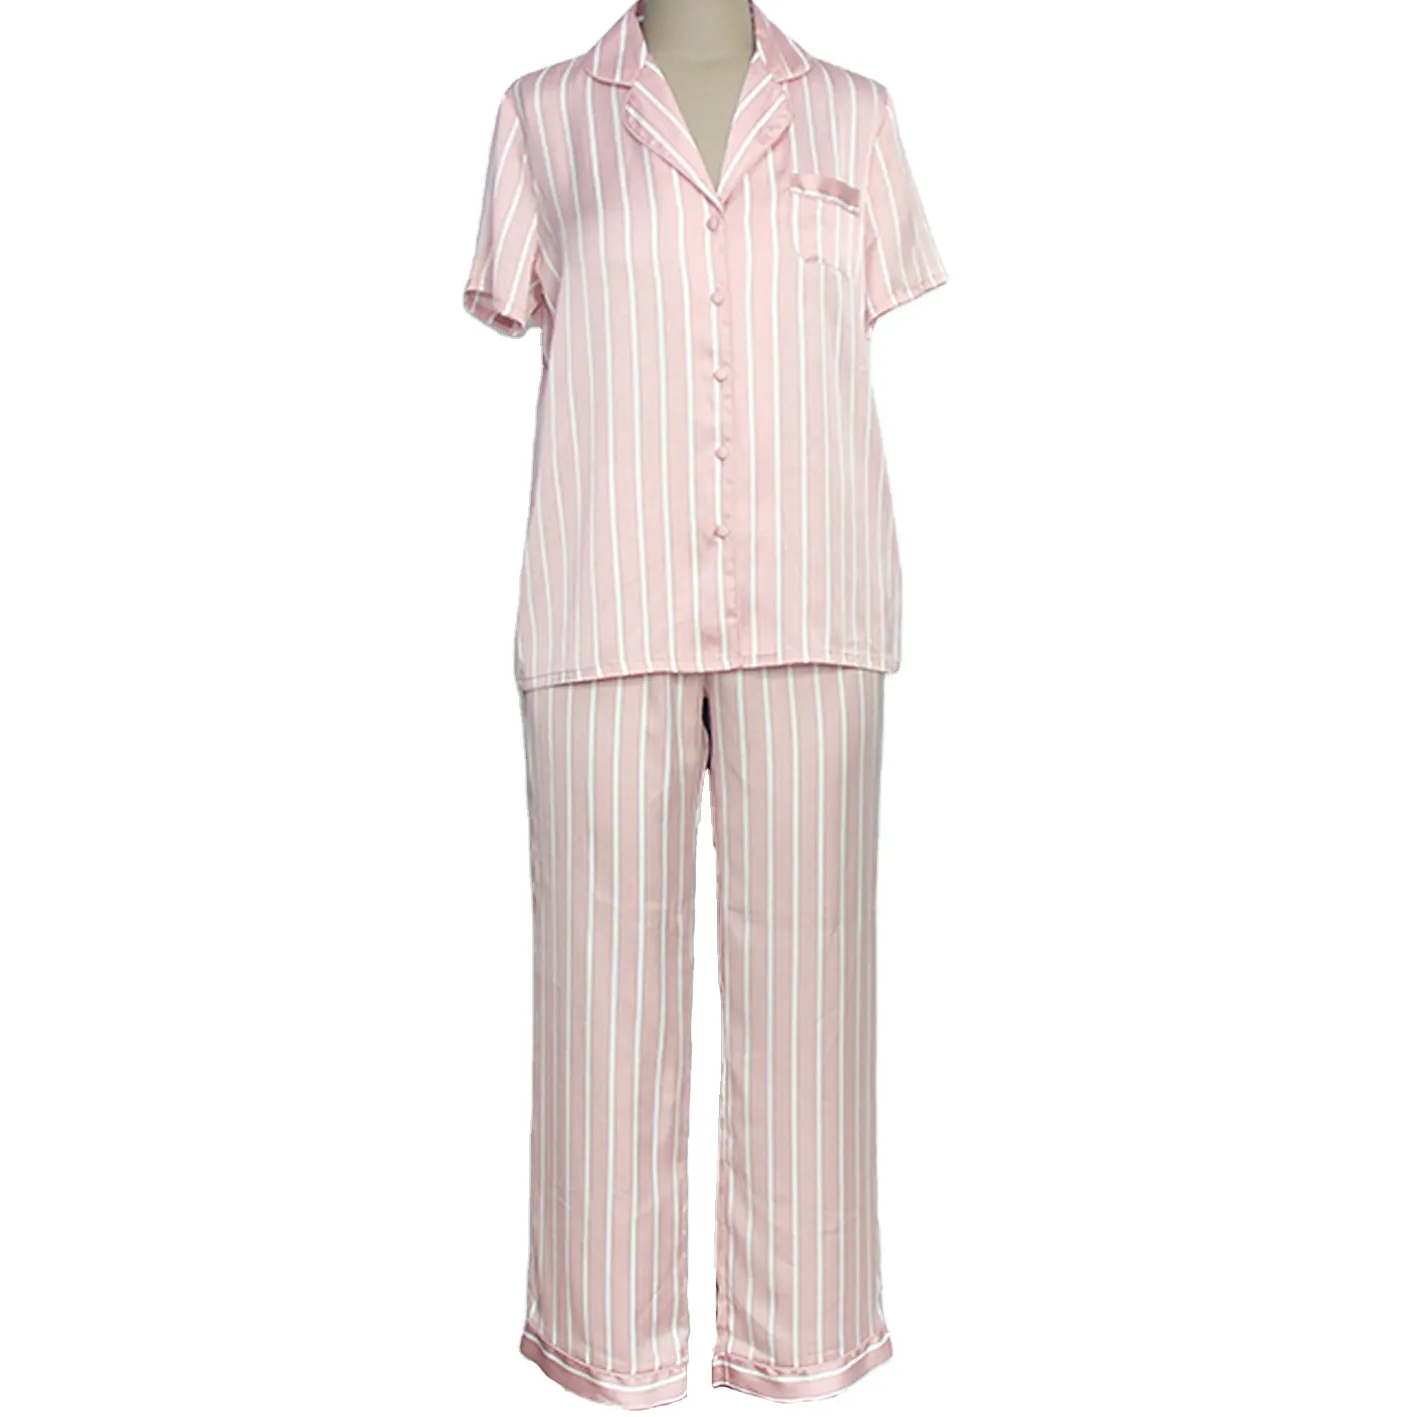 Personalizado damas botón satén seda como conjunto niña es adorable Camisetas De mujer rosa pijamas de rayas Mujer ropa de dormir